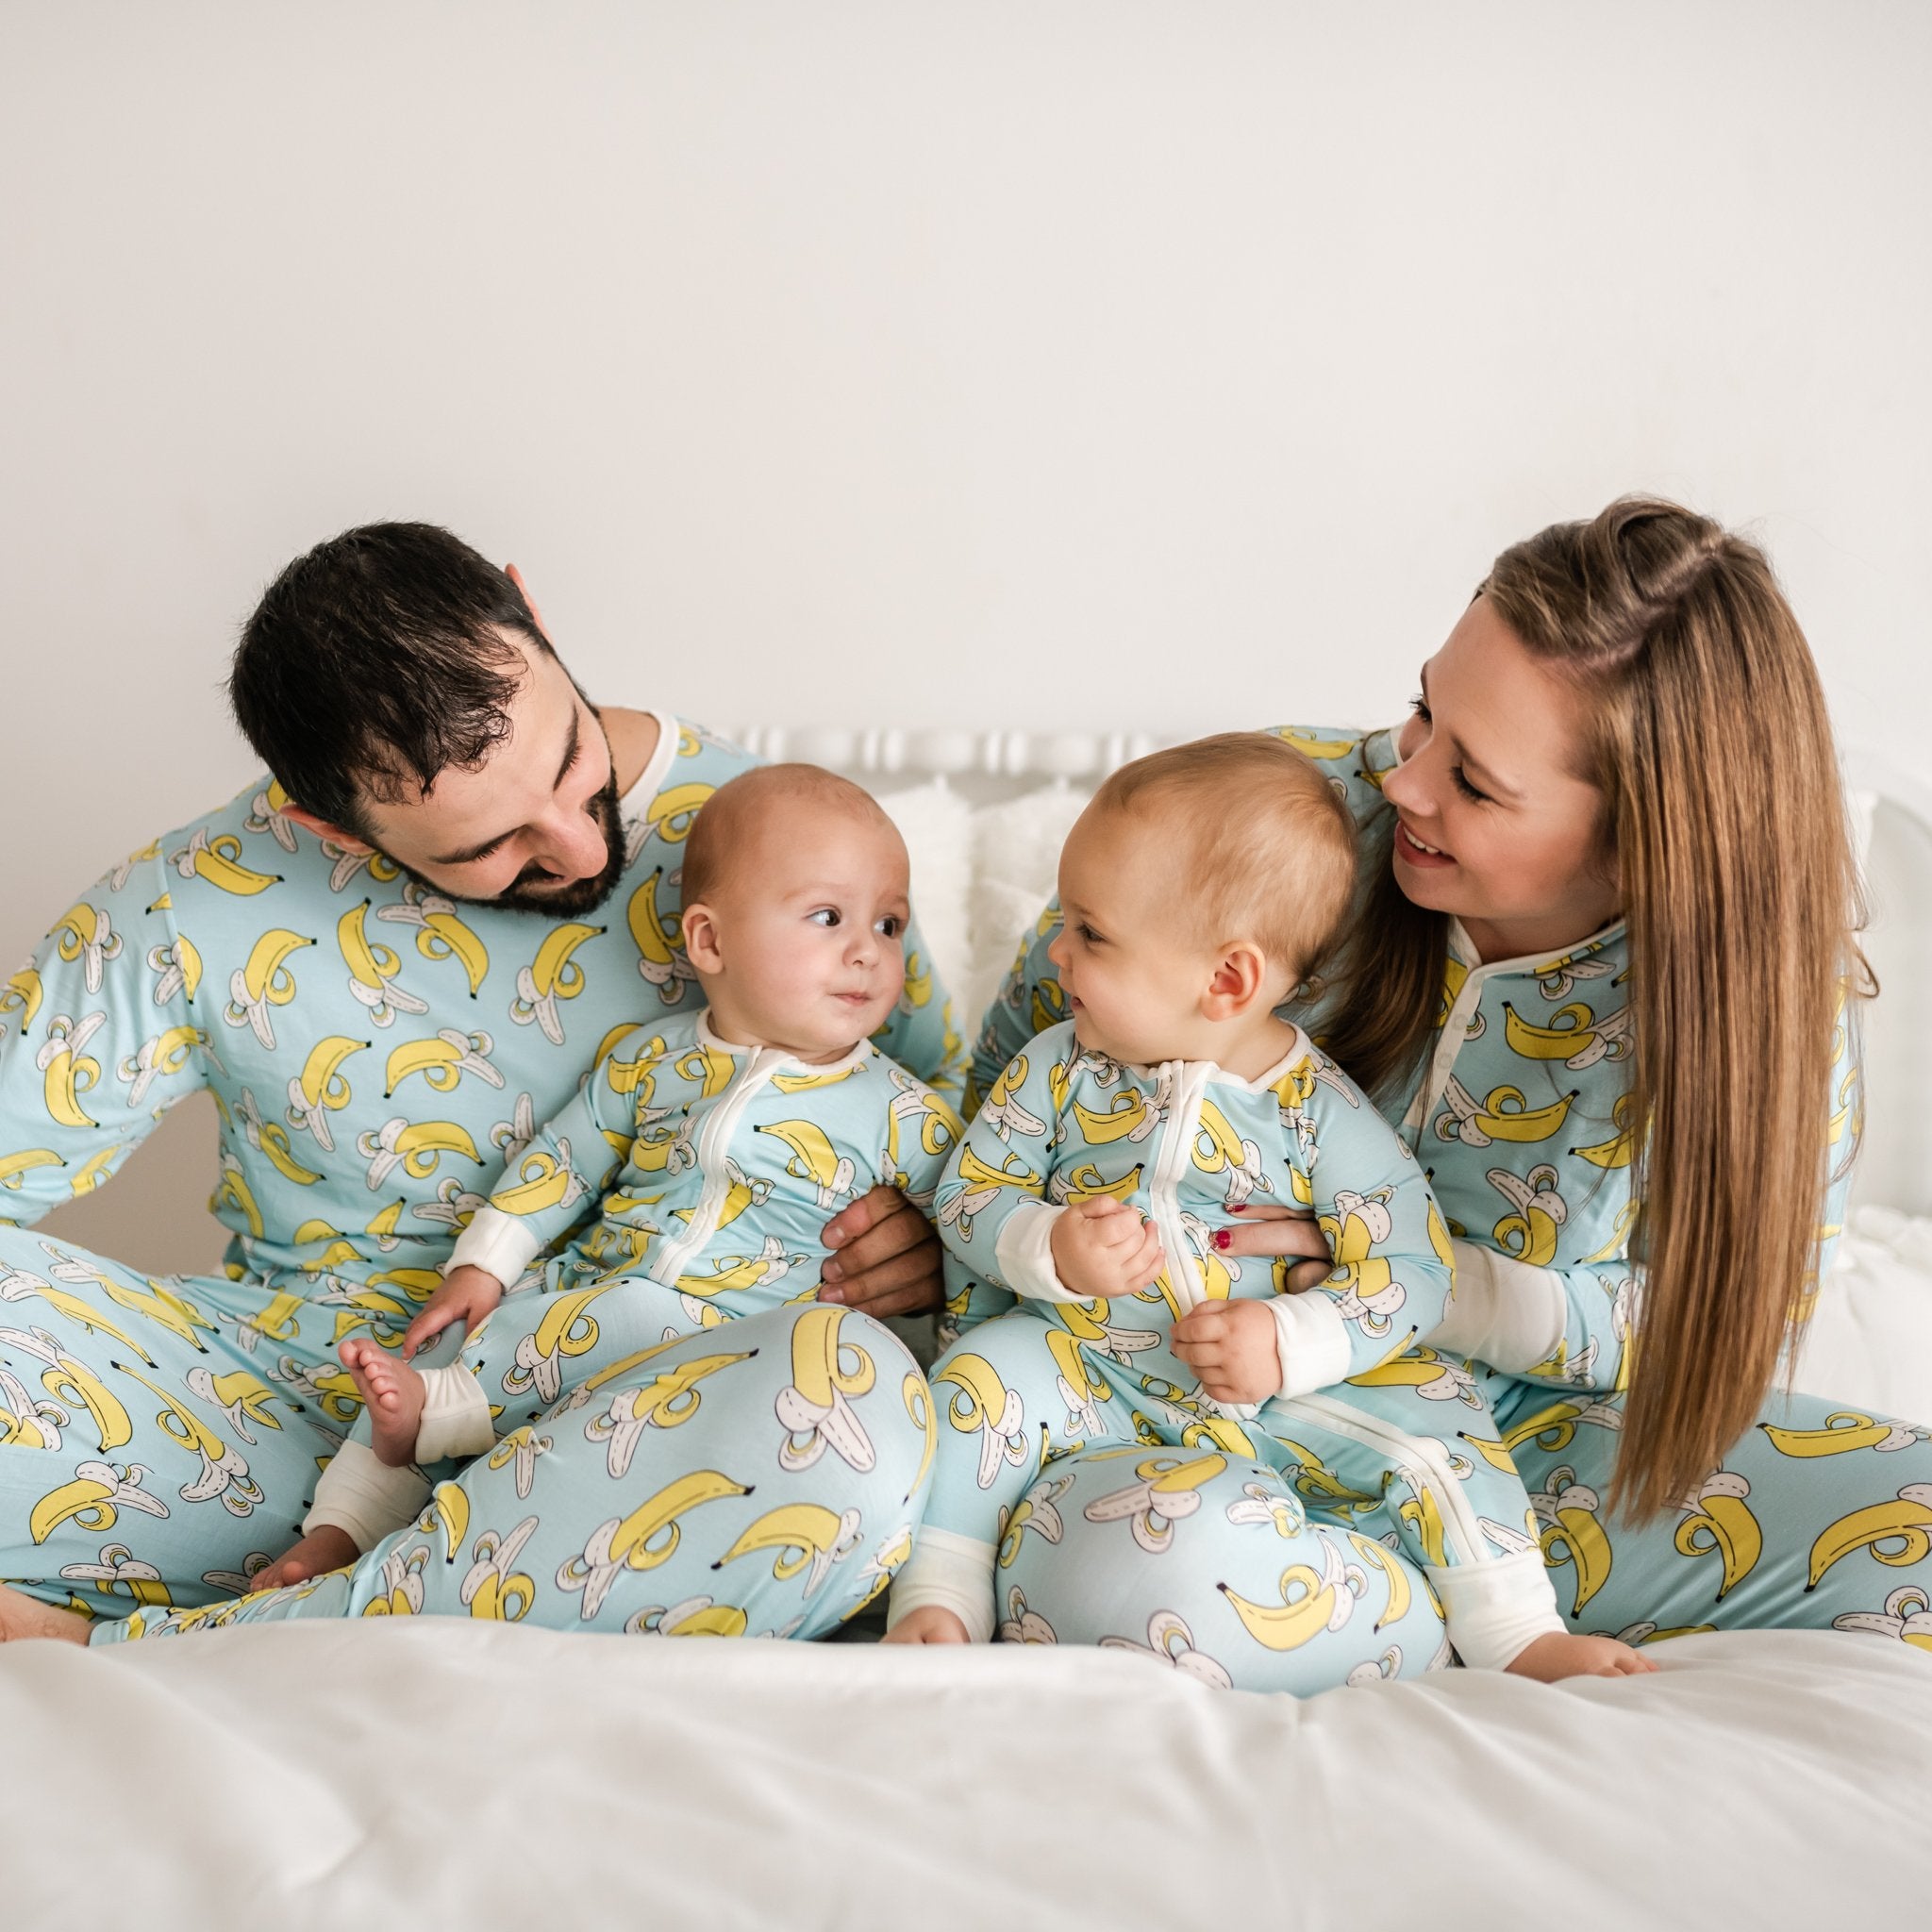 Bananas Women's Pajama Pants - Little Sleepies